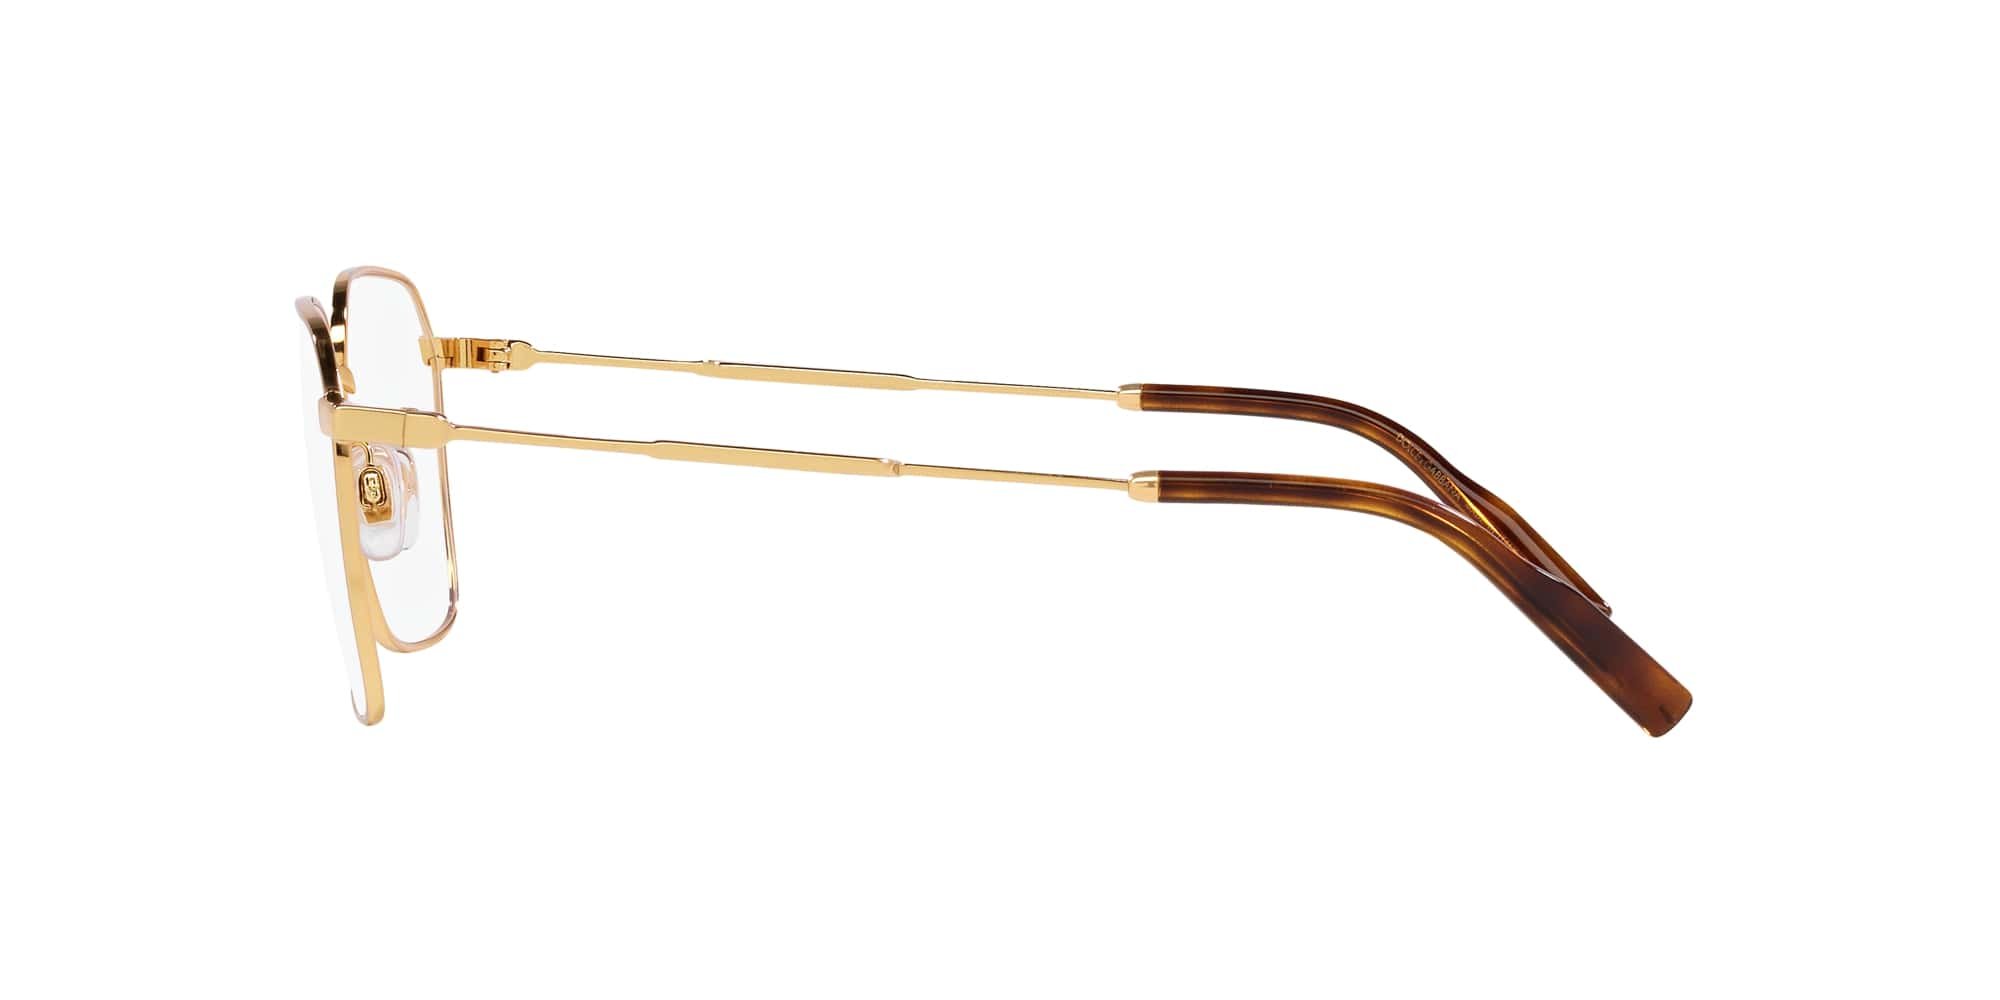 Das Bild zeigt die Korrektionsbrille DG1350 02 von der Marke D&G in gold.